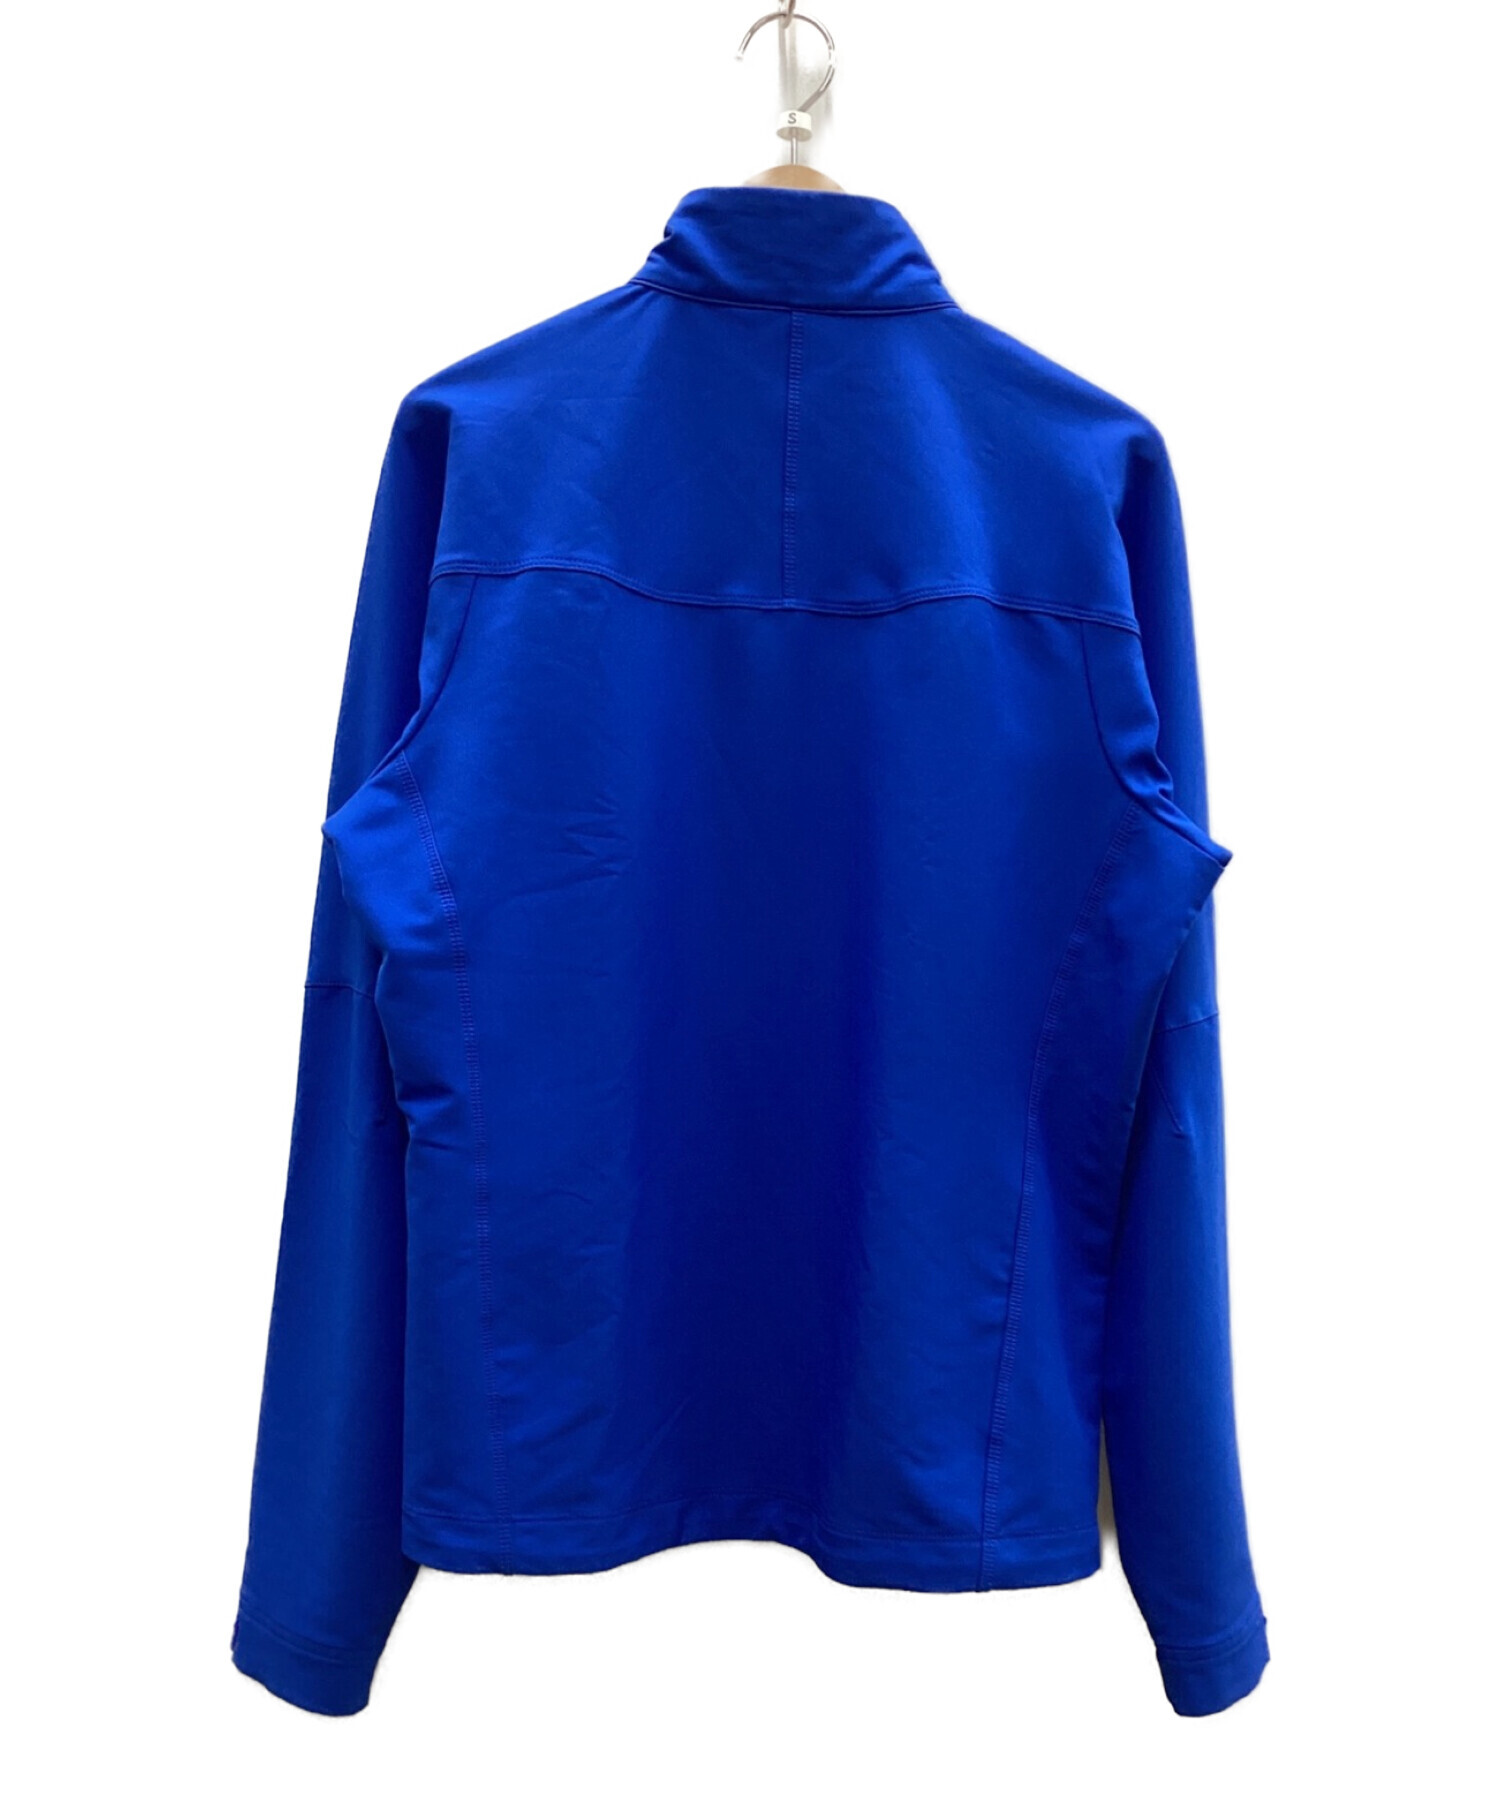 Patagonia (パタゴニア) シンプルガイドジャケット ブルー サイズ:S